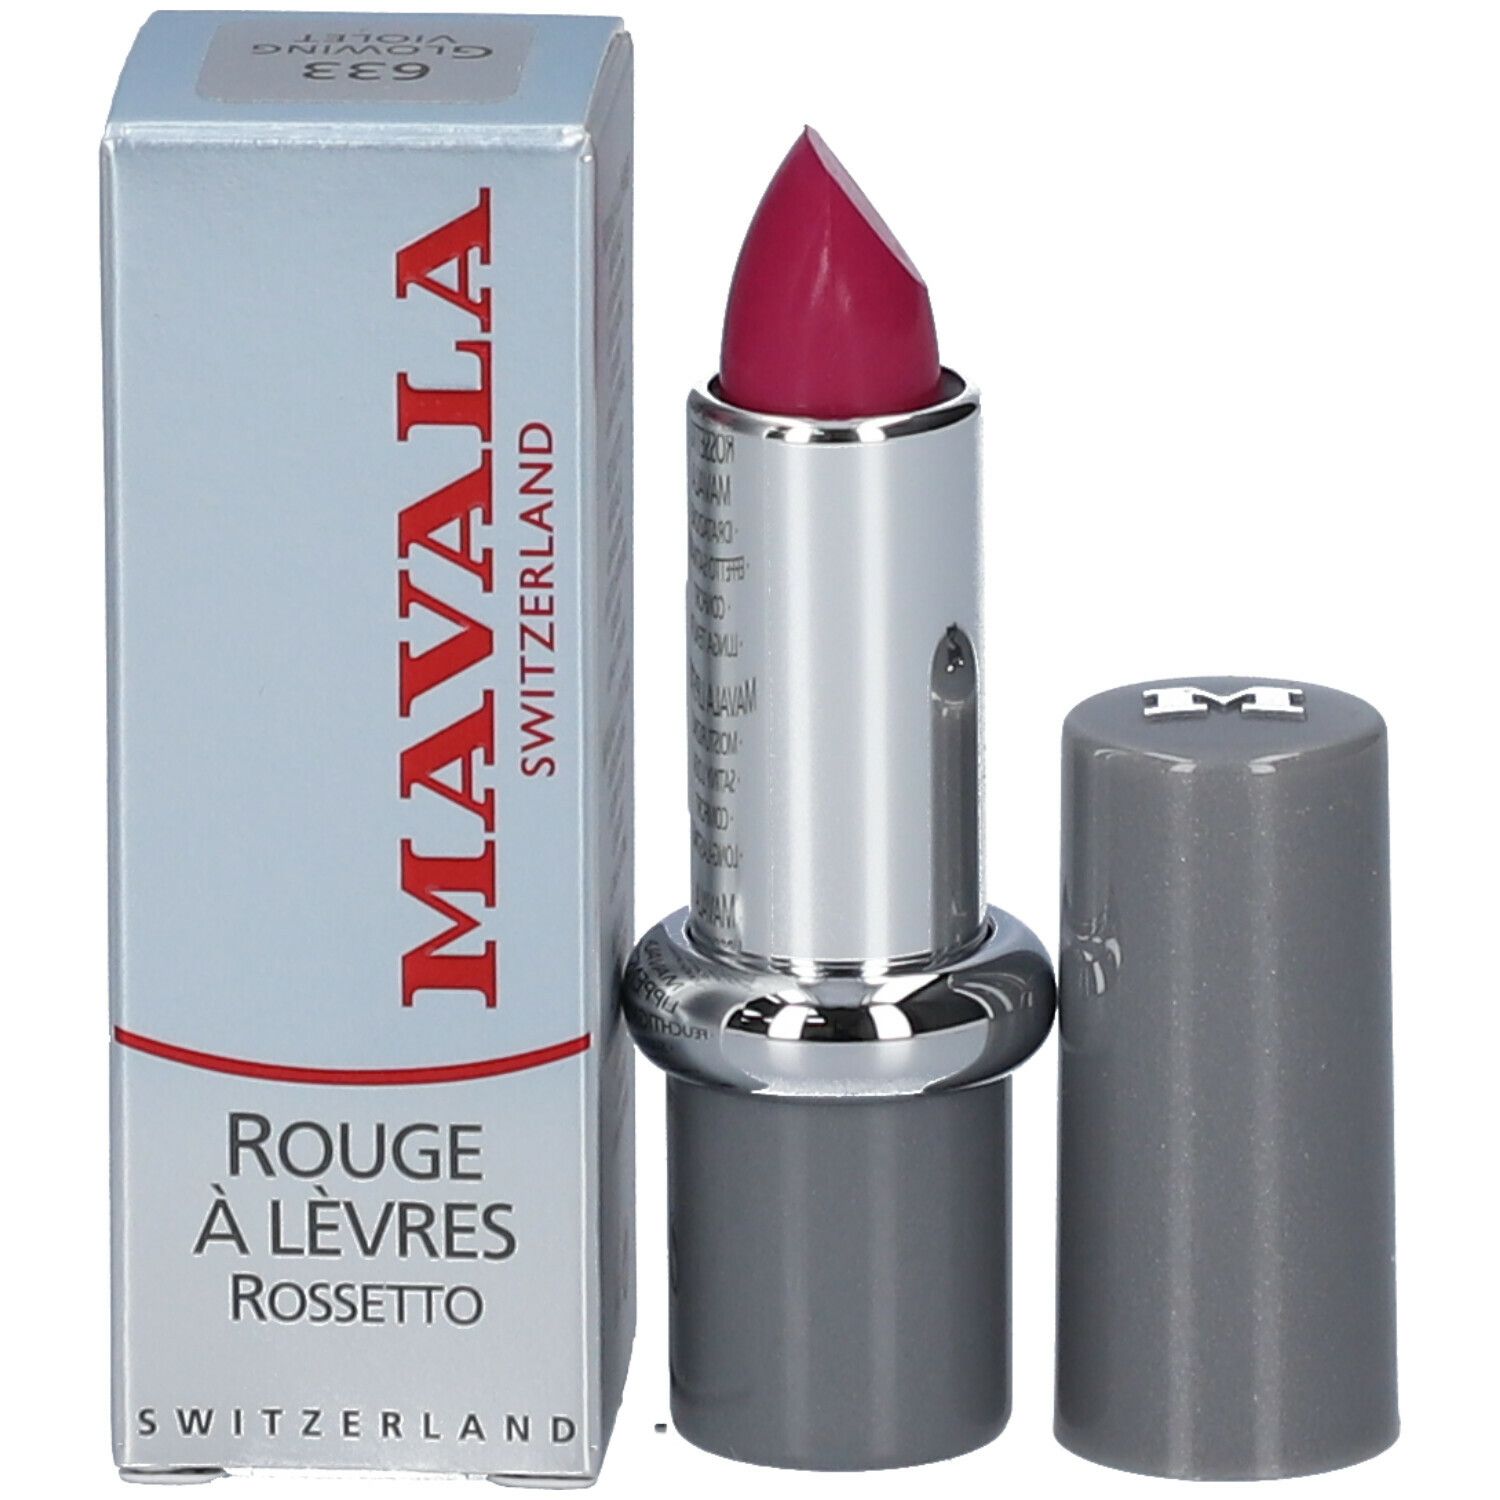 Mavala Rouge à Lèvres Crème - Glowing Violet 635